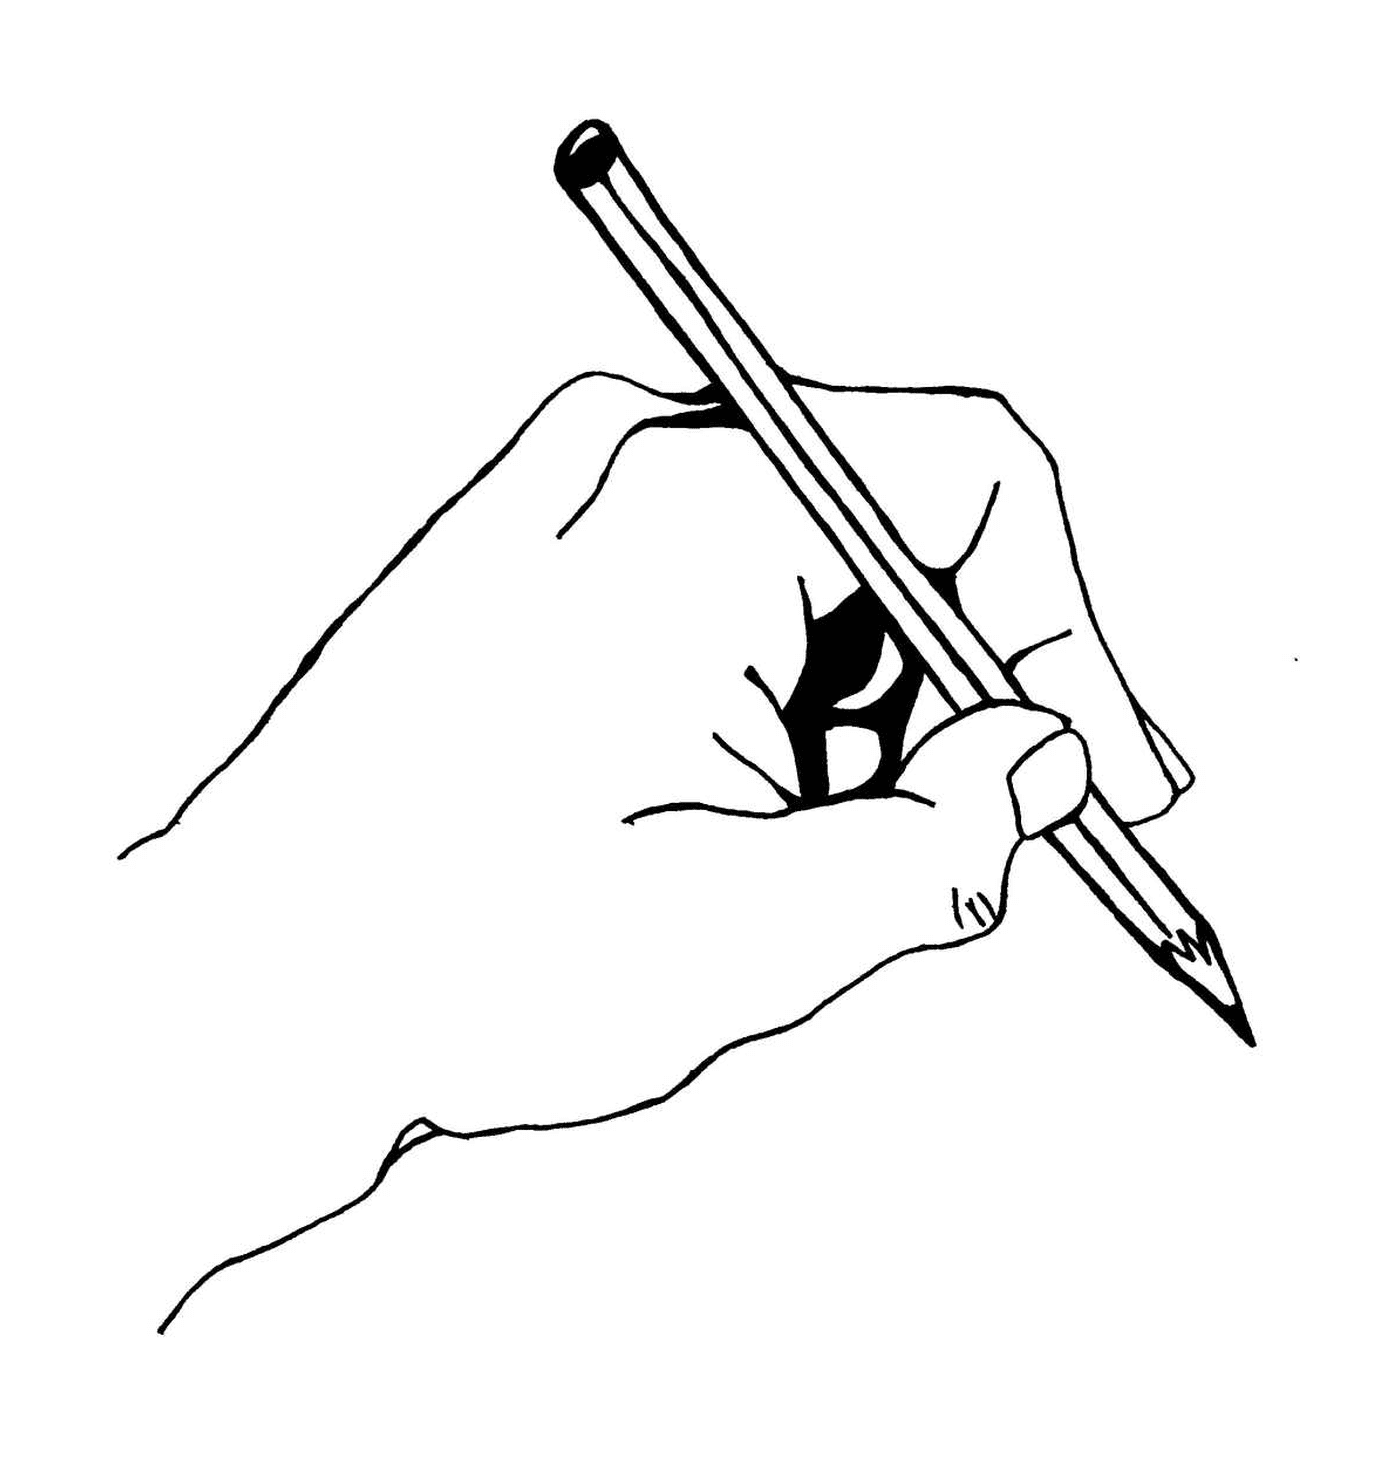  Erwachsene Hand halten Bleistift 